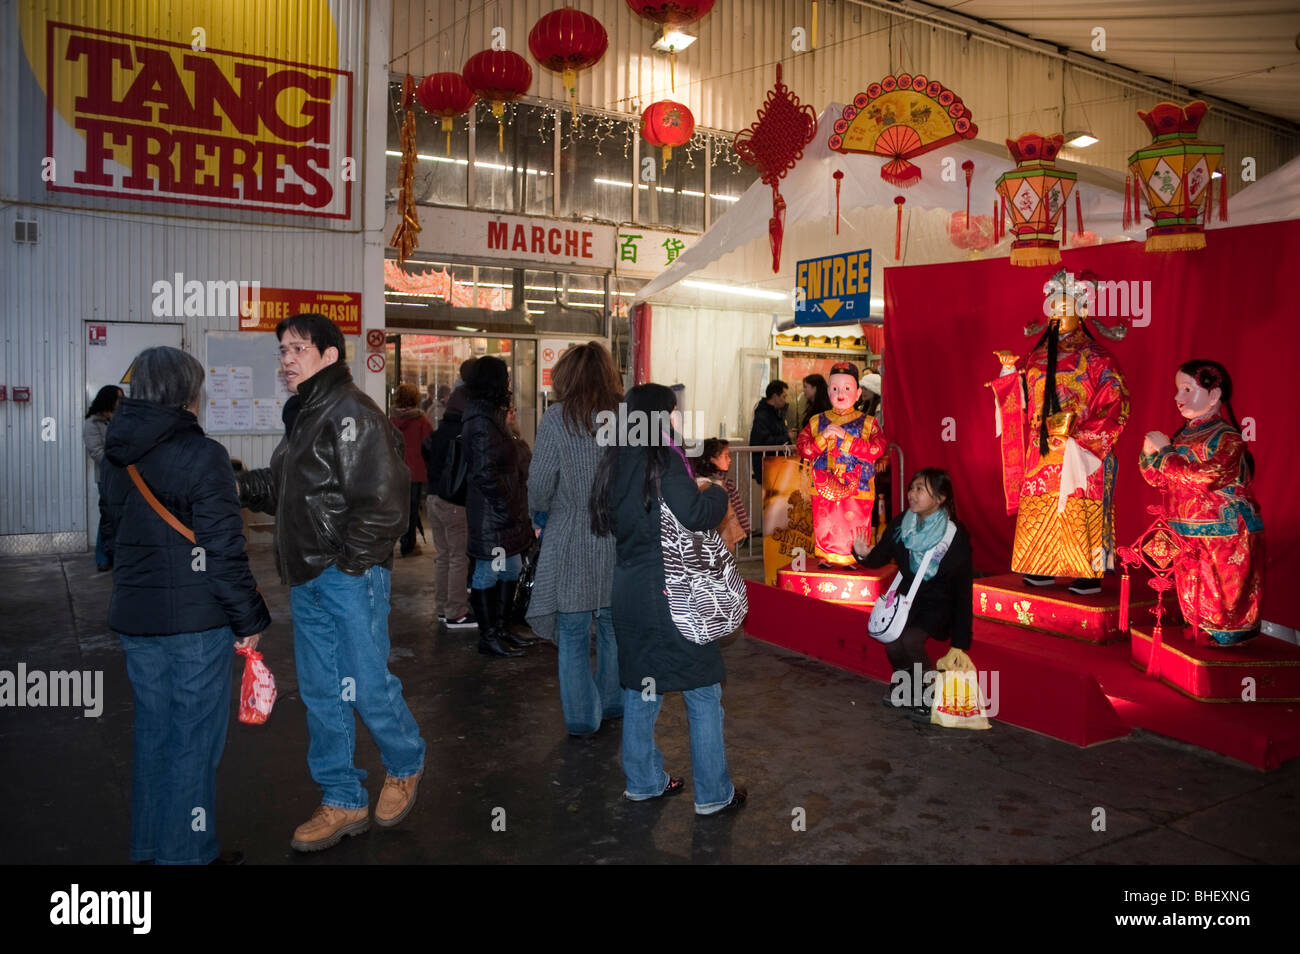 Paris, Francia, People Shopping en el supermercado chino, 'Tang Freres' durante 'Año Nuevo Chino' Entrada con decoración, la comunidad china de parís Foto de stock